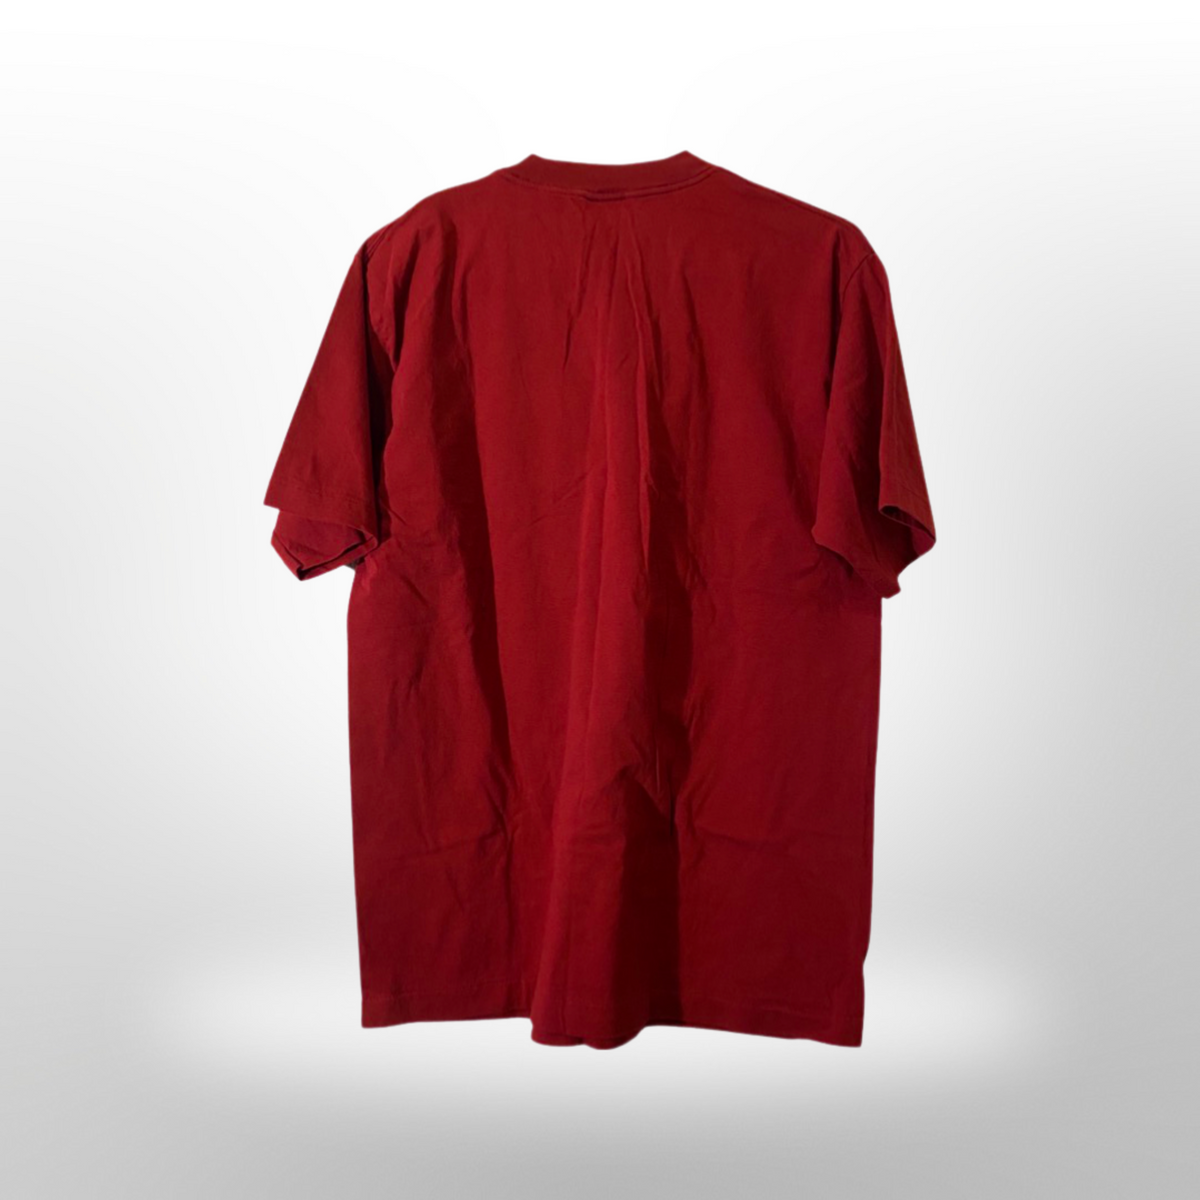 Colorado Avalanche Retro Varsity Inset Sleeve T-Shirt